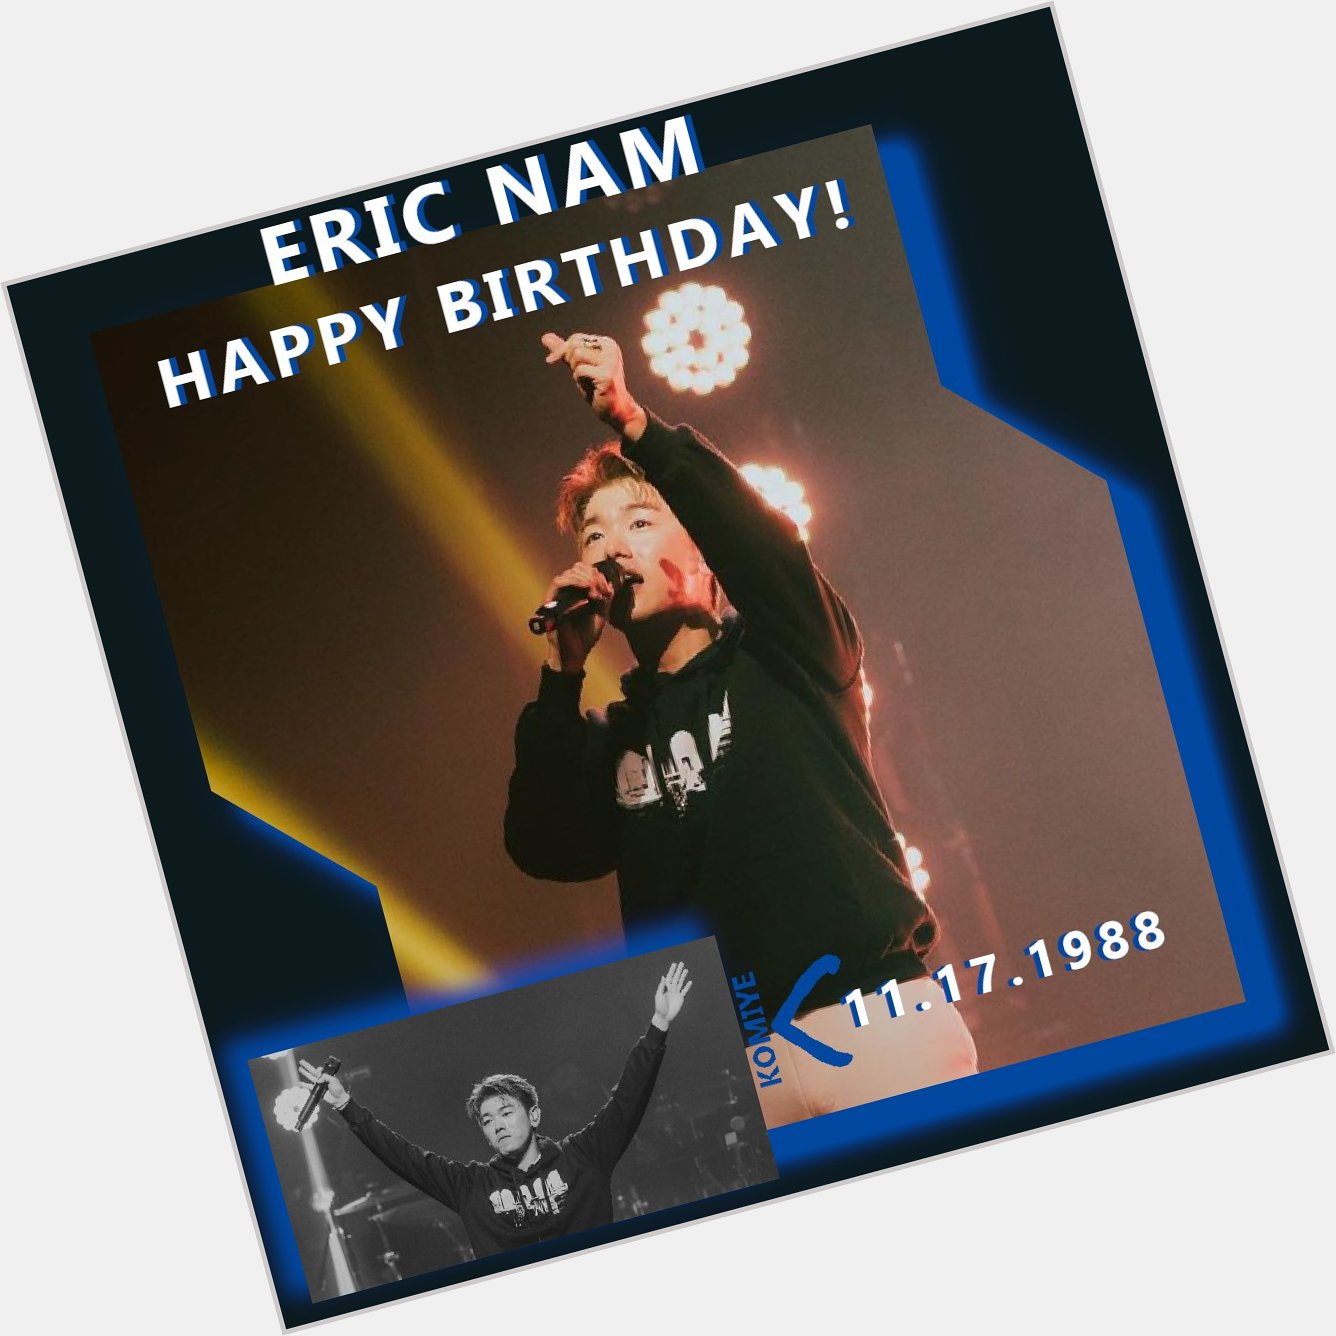 Happy Birthday to Eric Nam!       !         